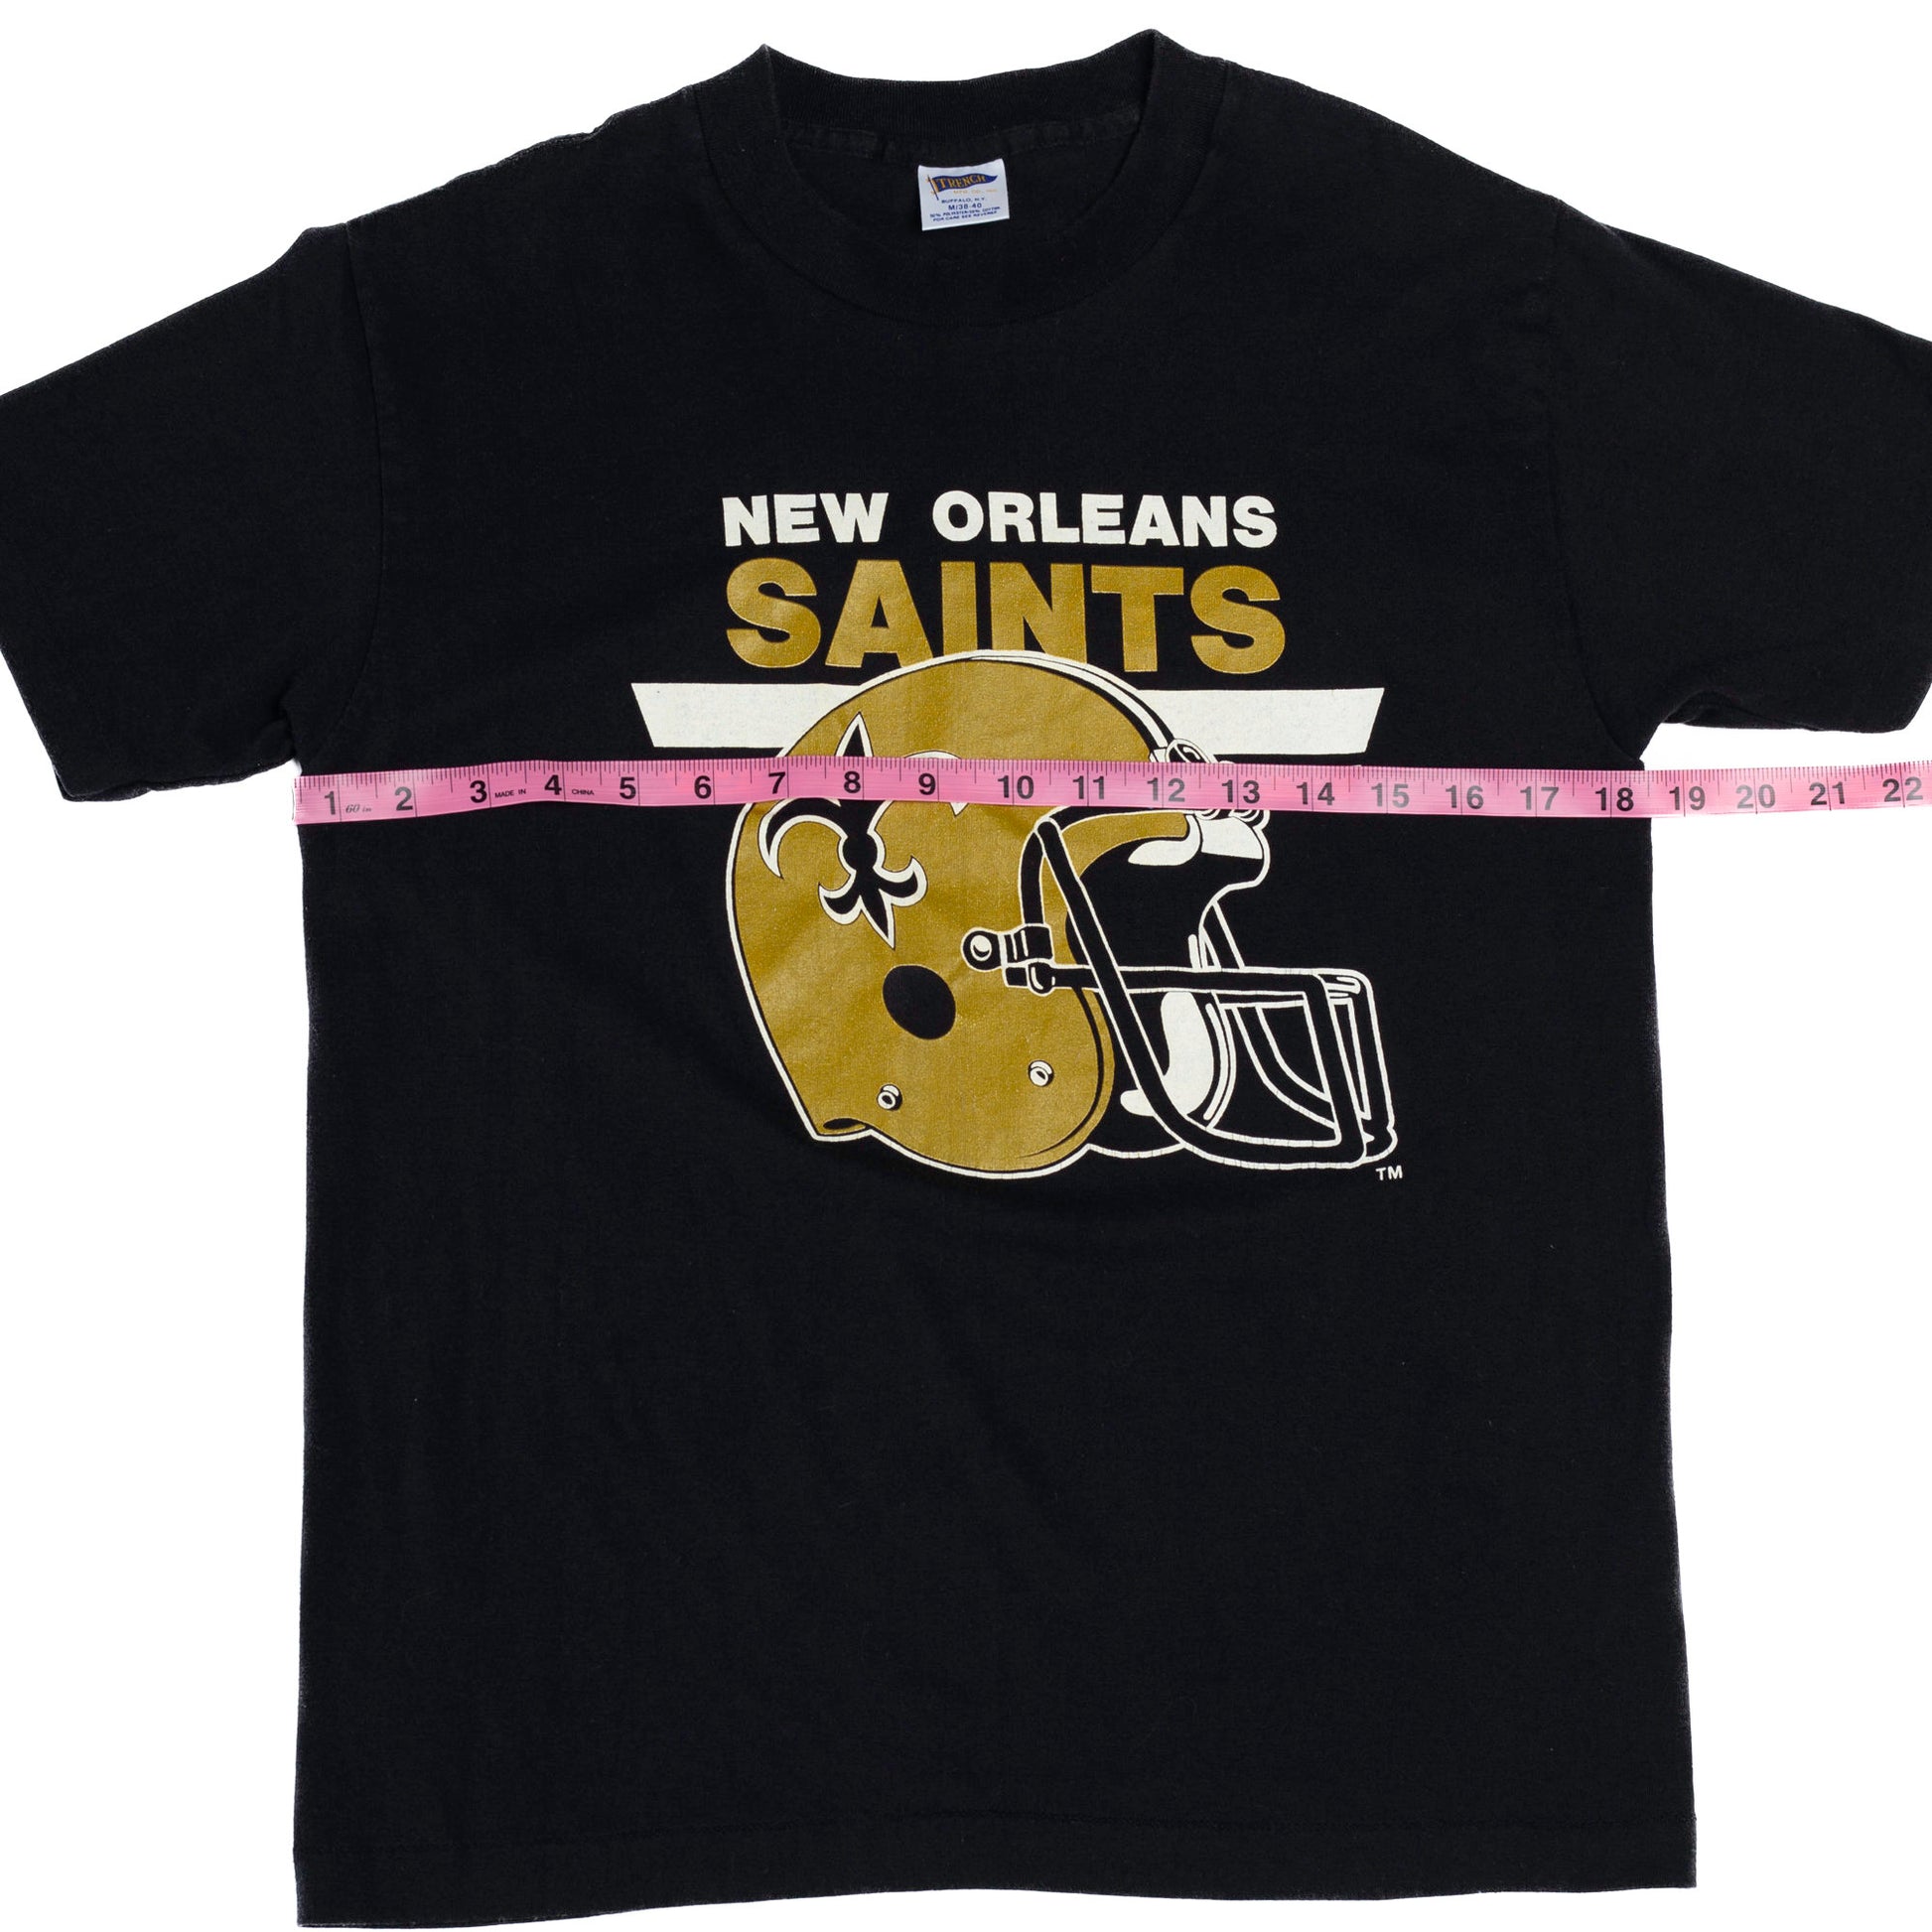 New Orleans Saints Retro 90's NFL Crewneck Sweatshirt Black / S